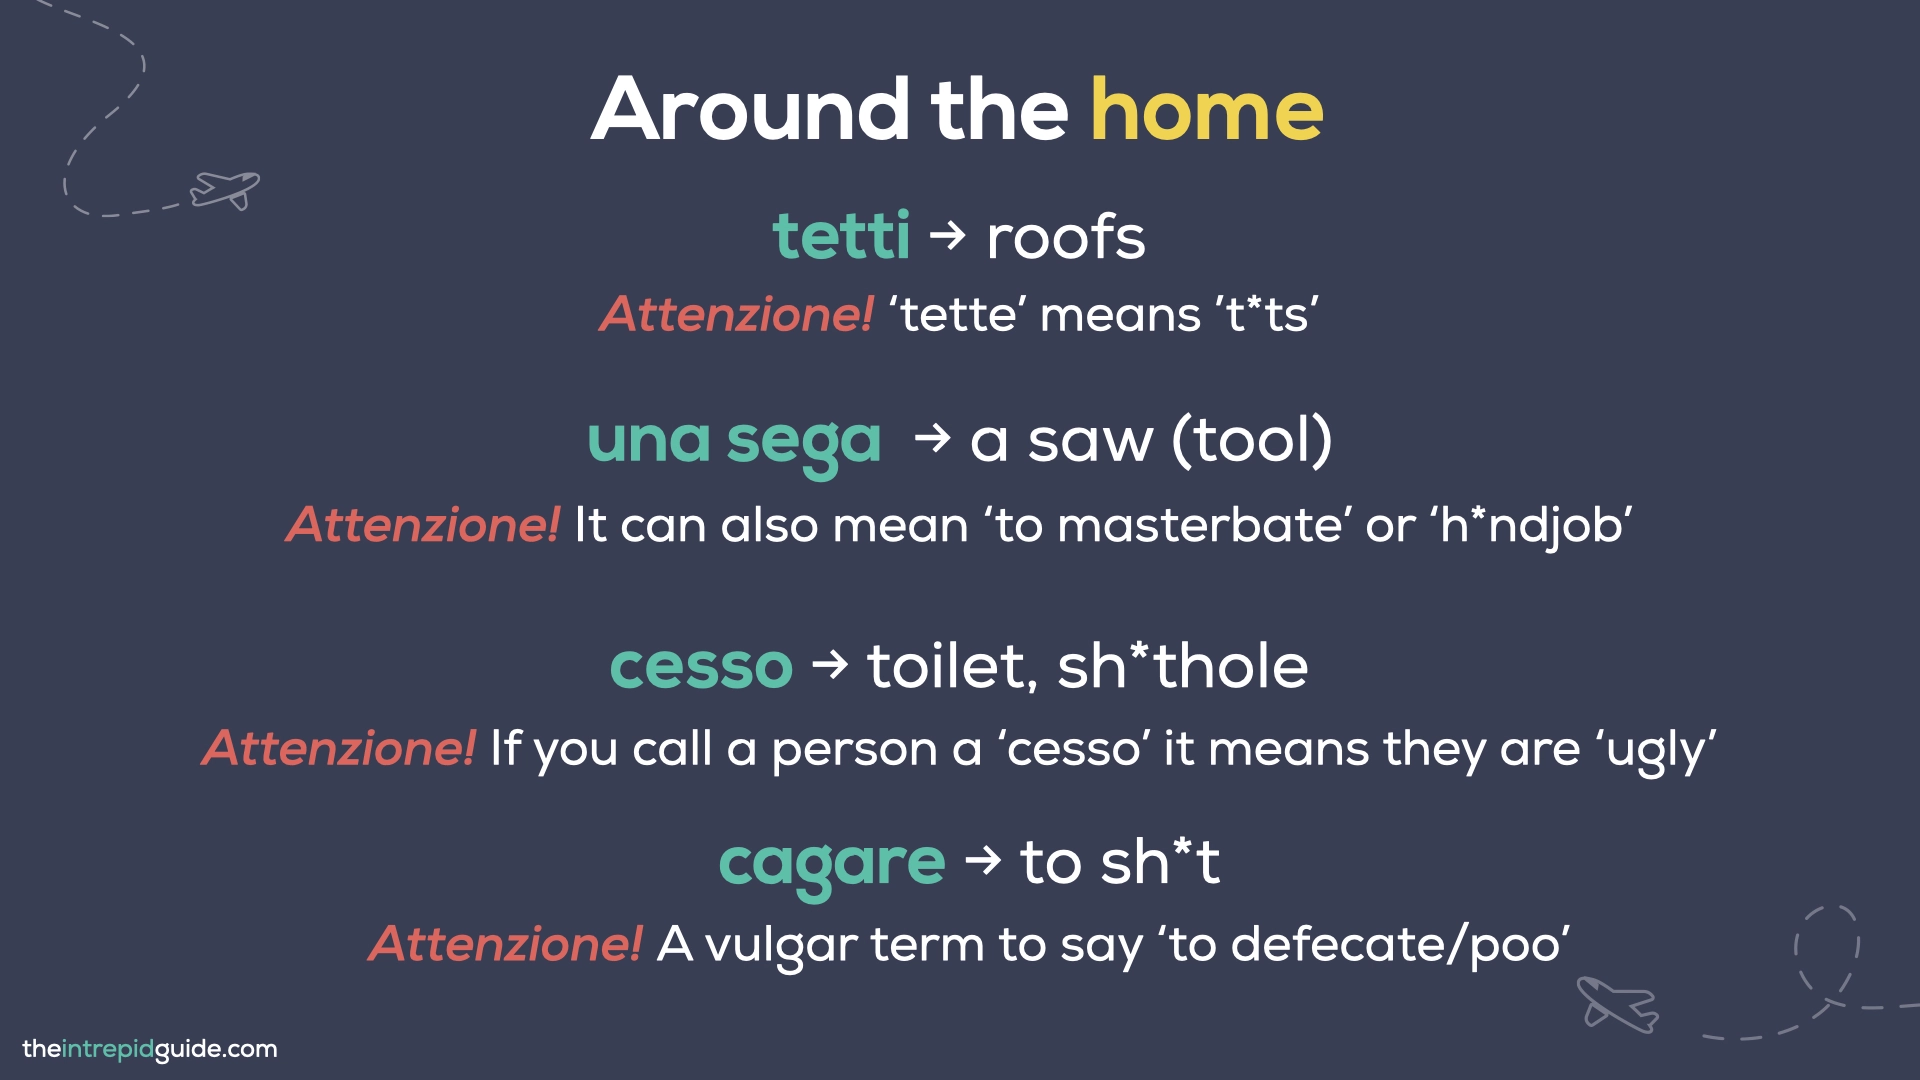 Italian Bad Words - tetti, una sega, cesso, cagare